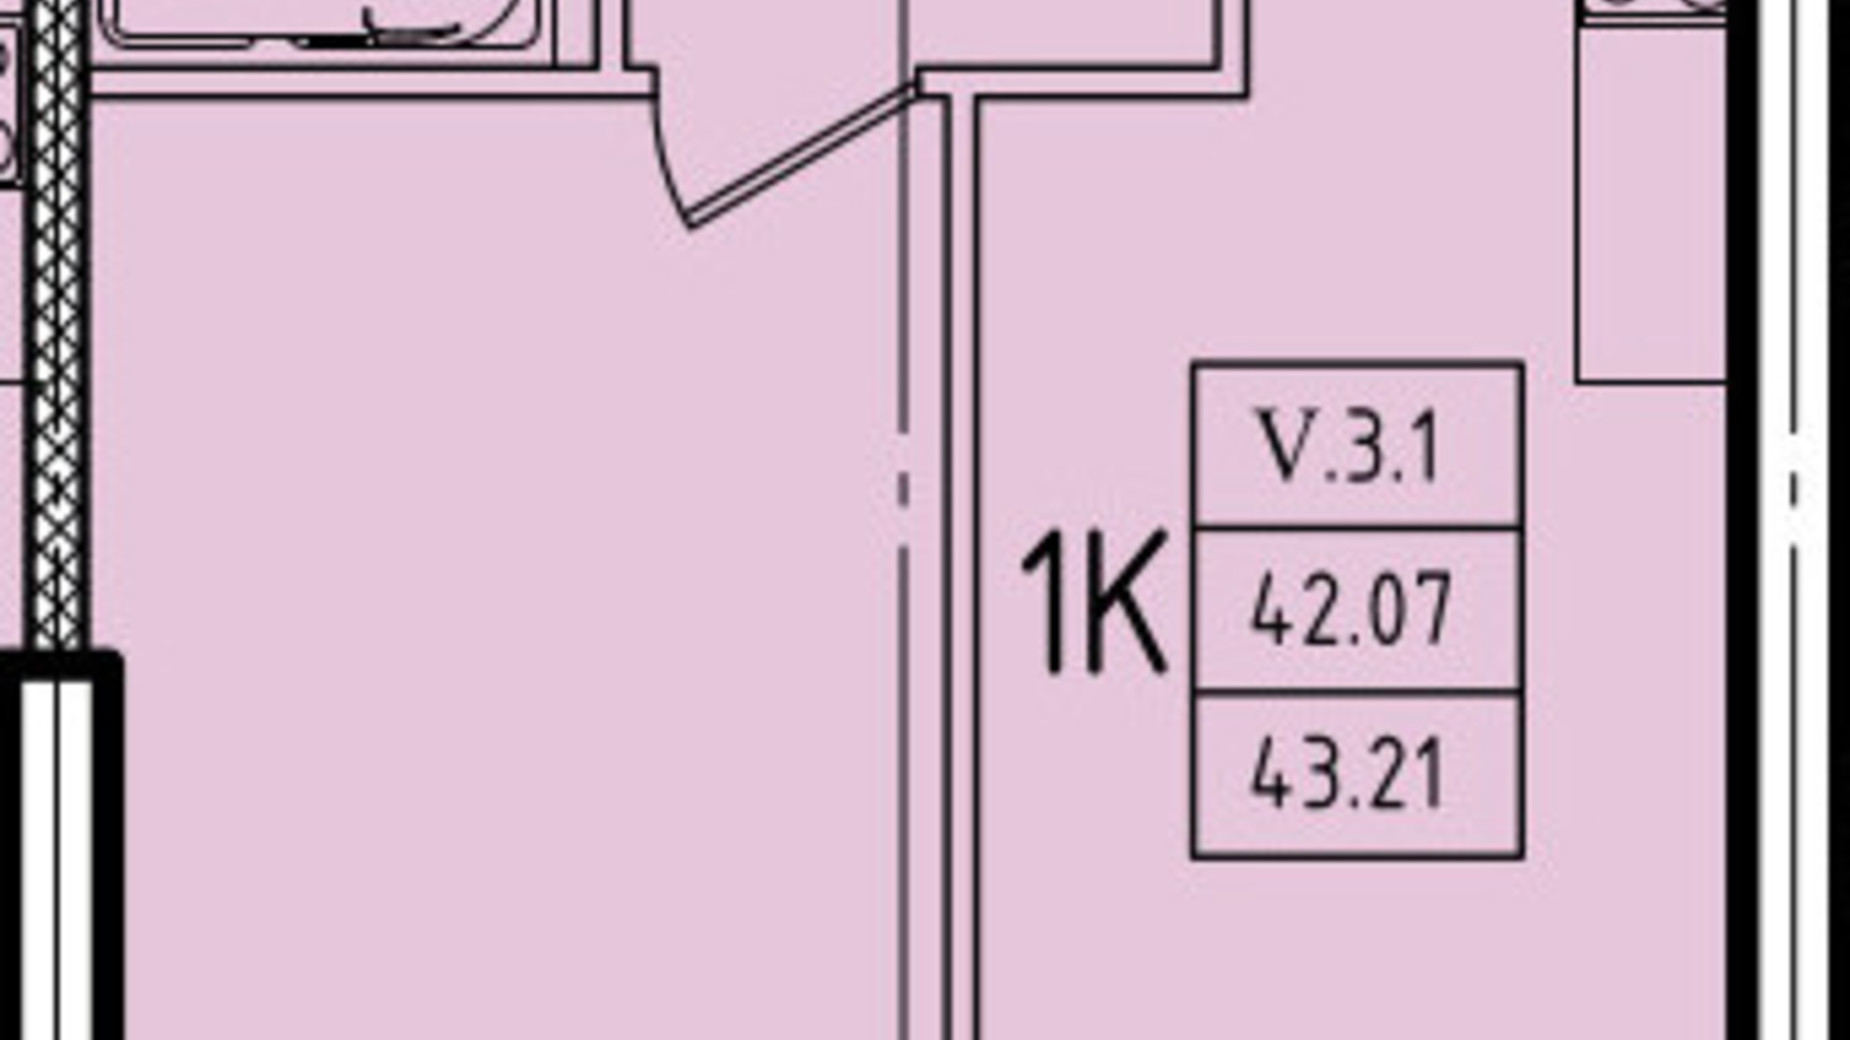 Планування 1-кімнатної квартири в ЖК Еллада 43.21 м², фото 602331